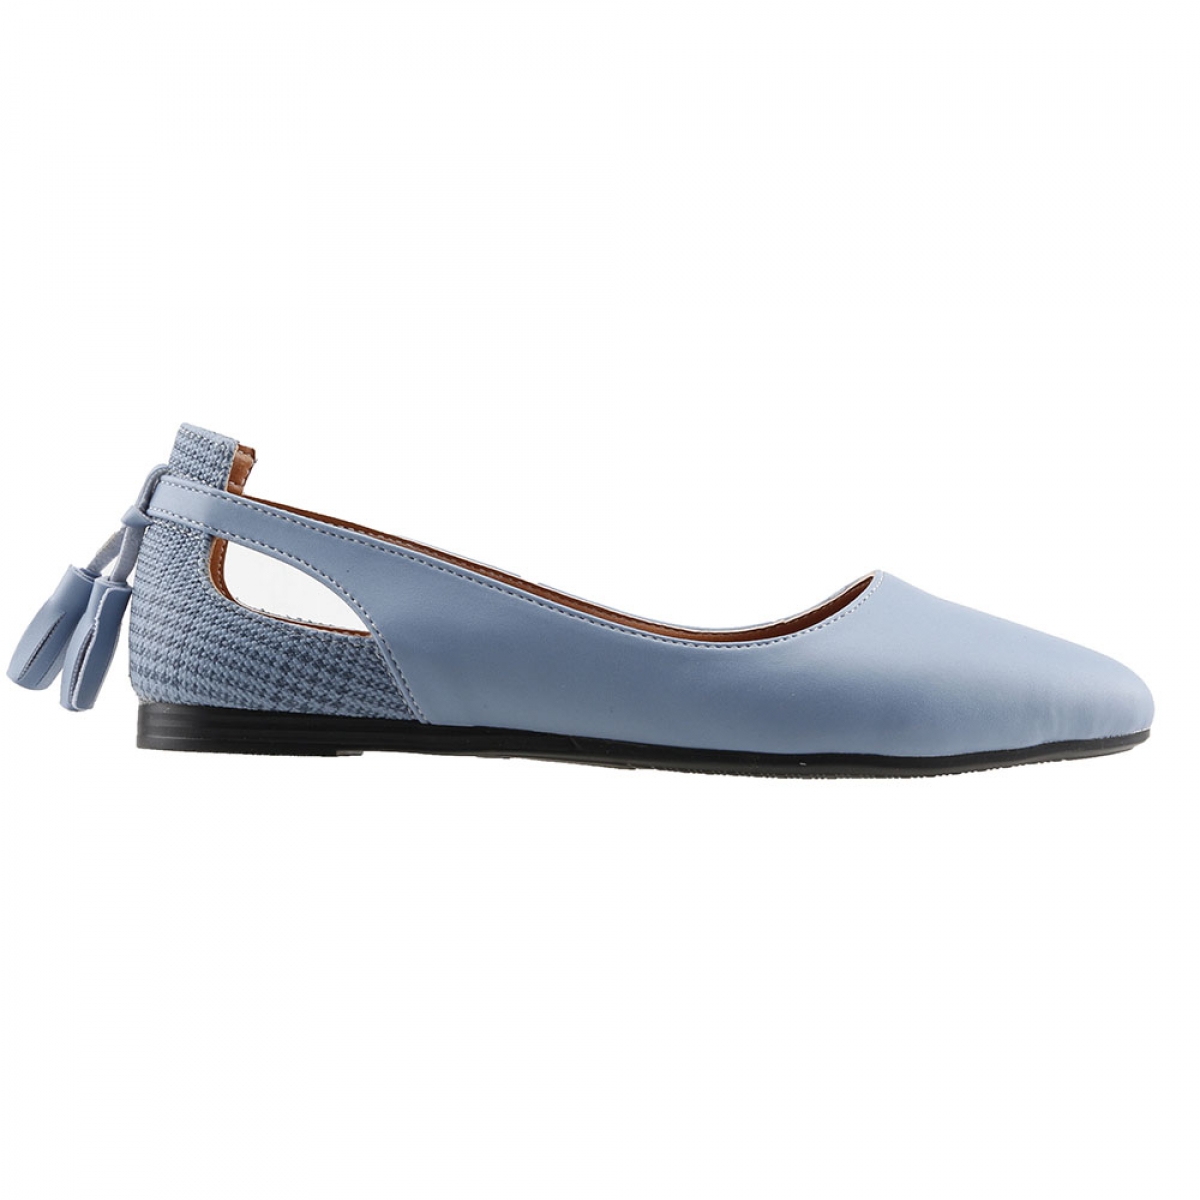 Flo 1920-204 Günlük Fiyonklu Sandalet Kadın Cilt Babet Ayakkabı Mavi. 1